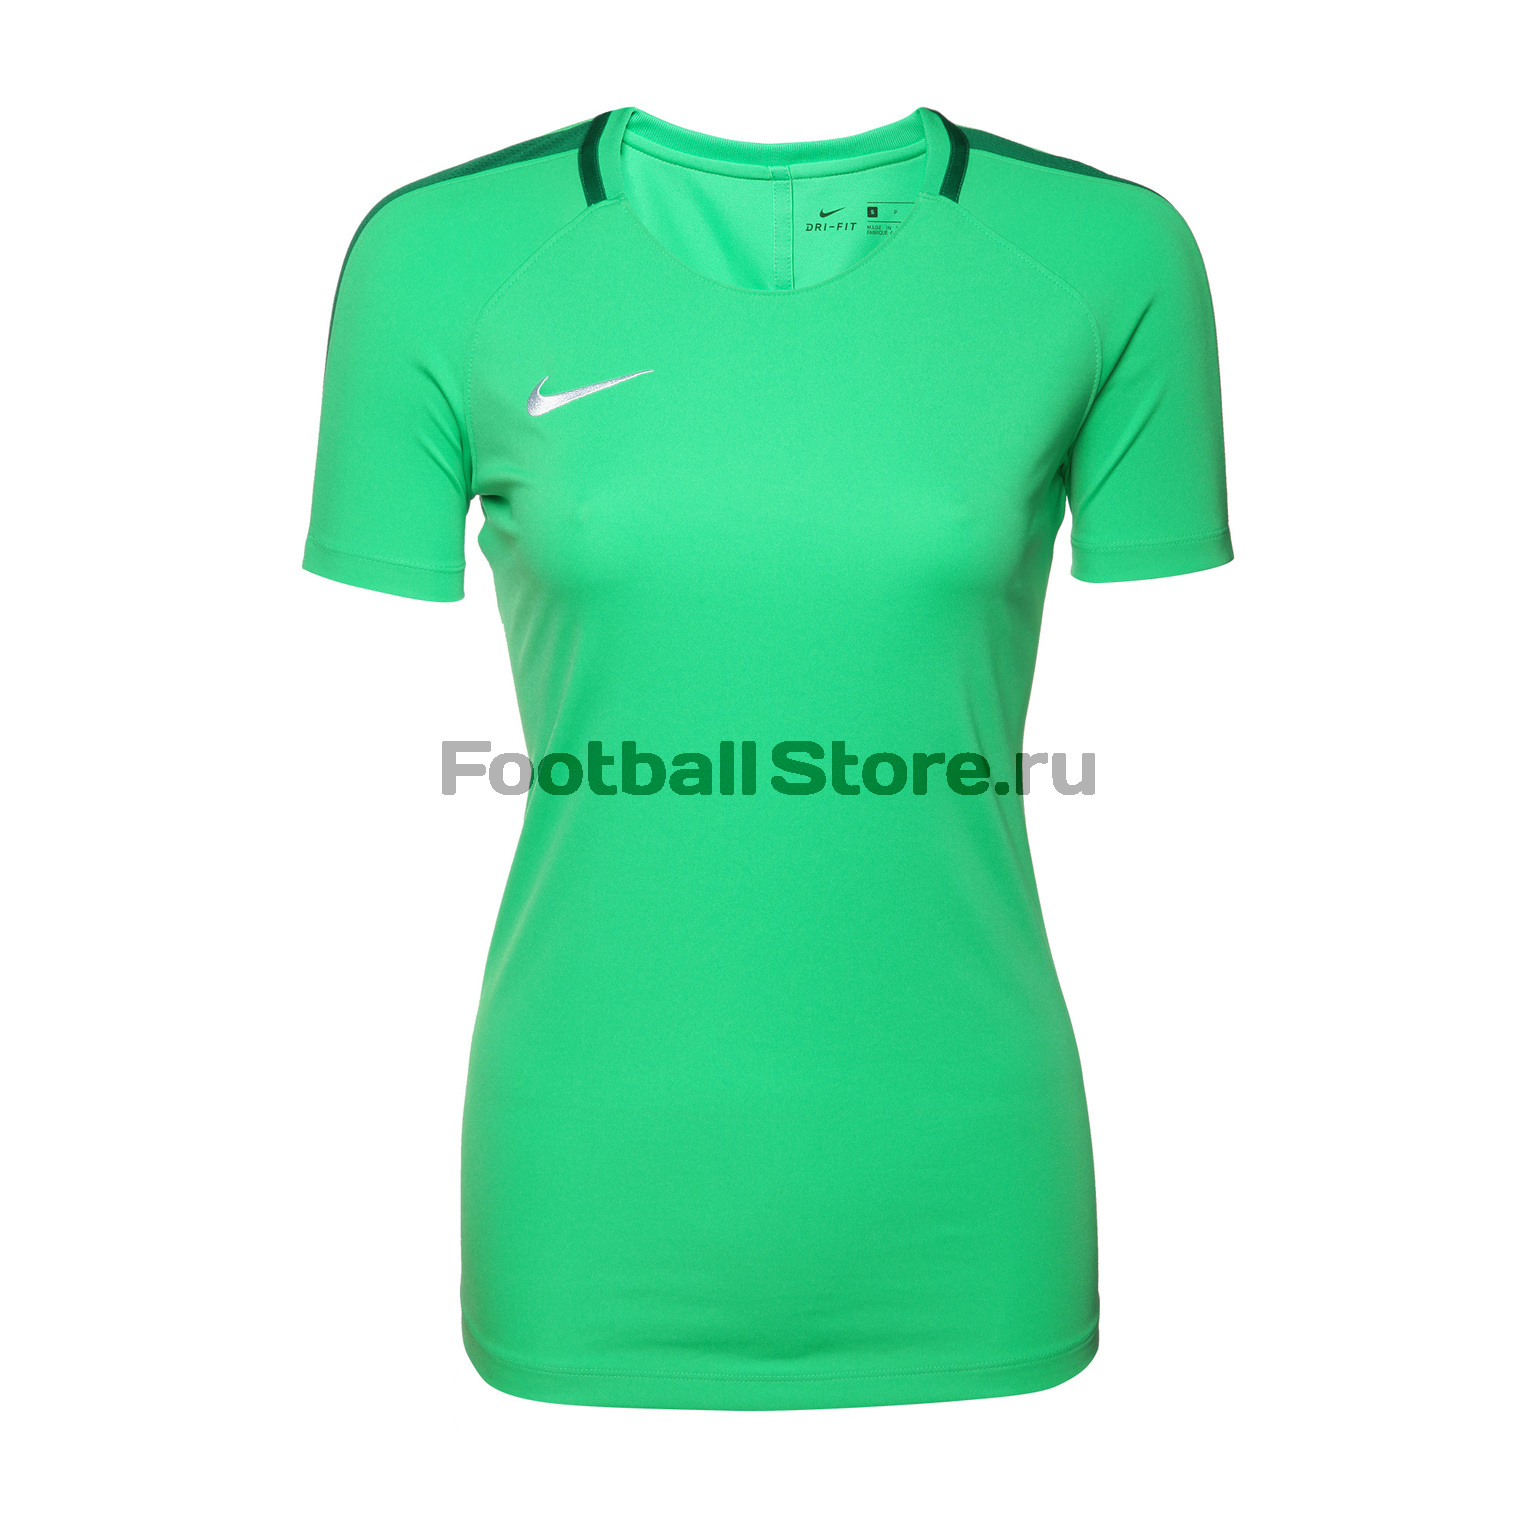 Футболка тренировочная женская Nike Academy 893741-361